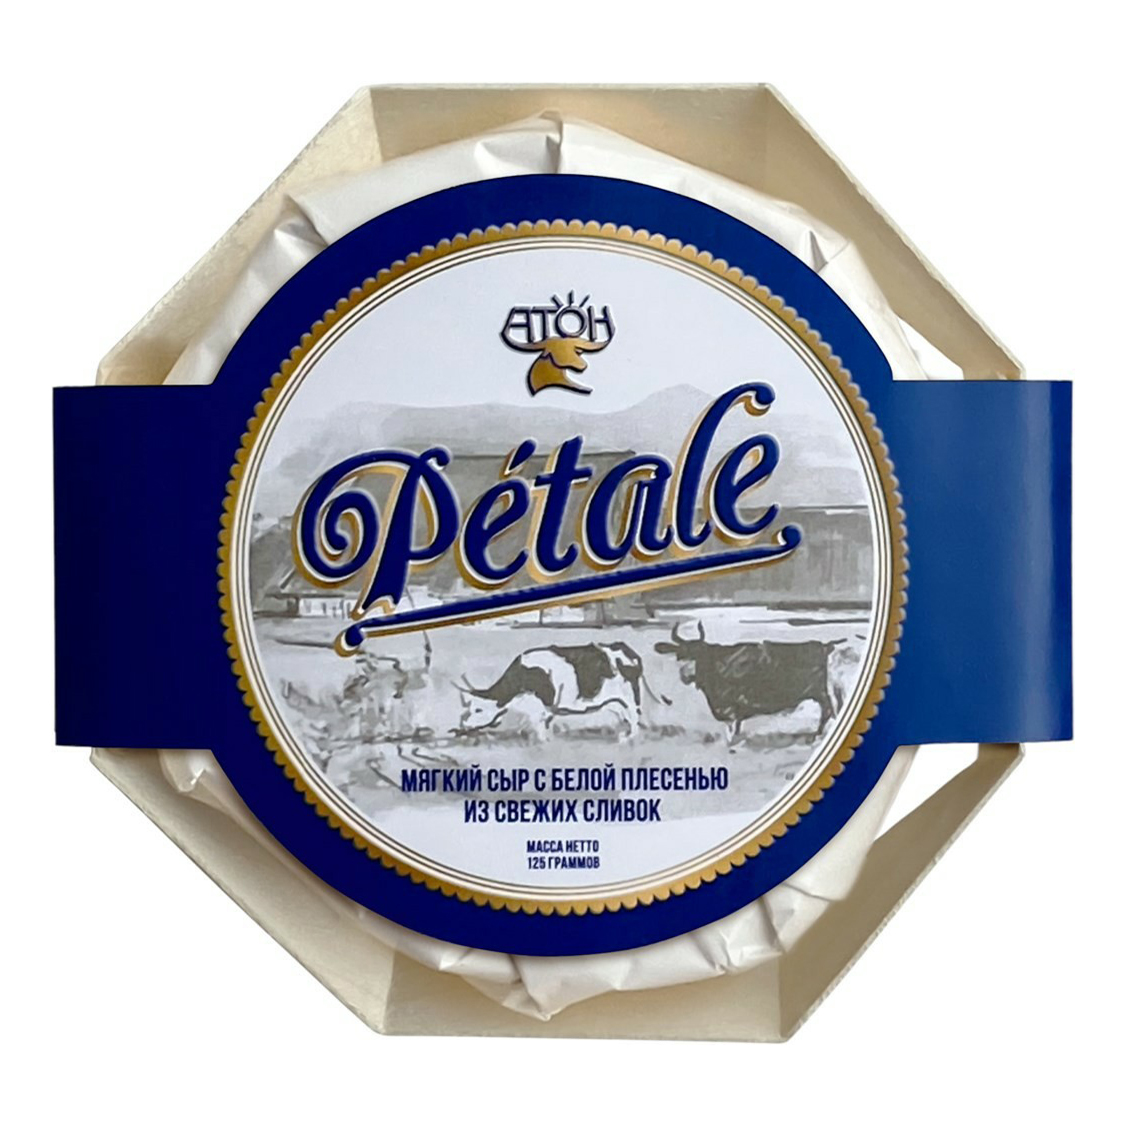 Сыр мягкий Атон Петаль с белой плесенью 60% бзмж 125 г